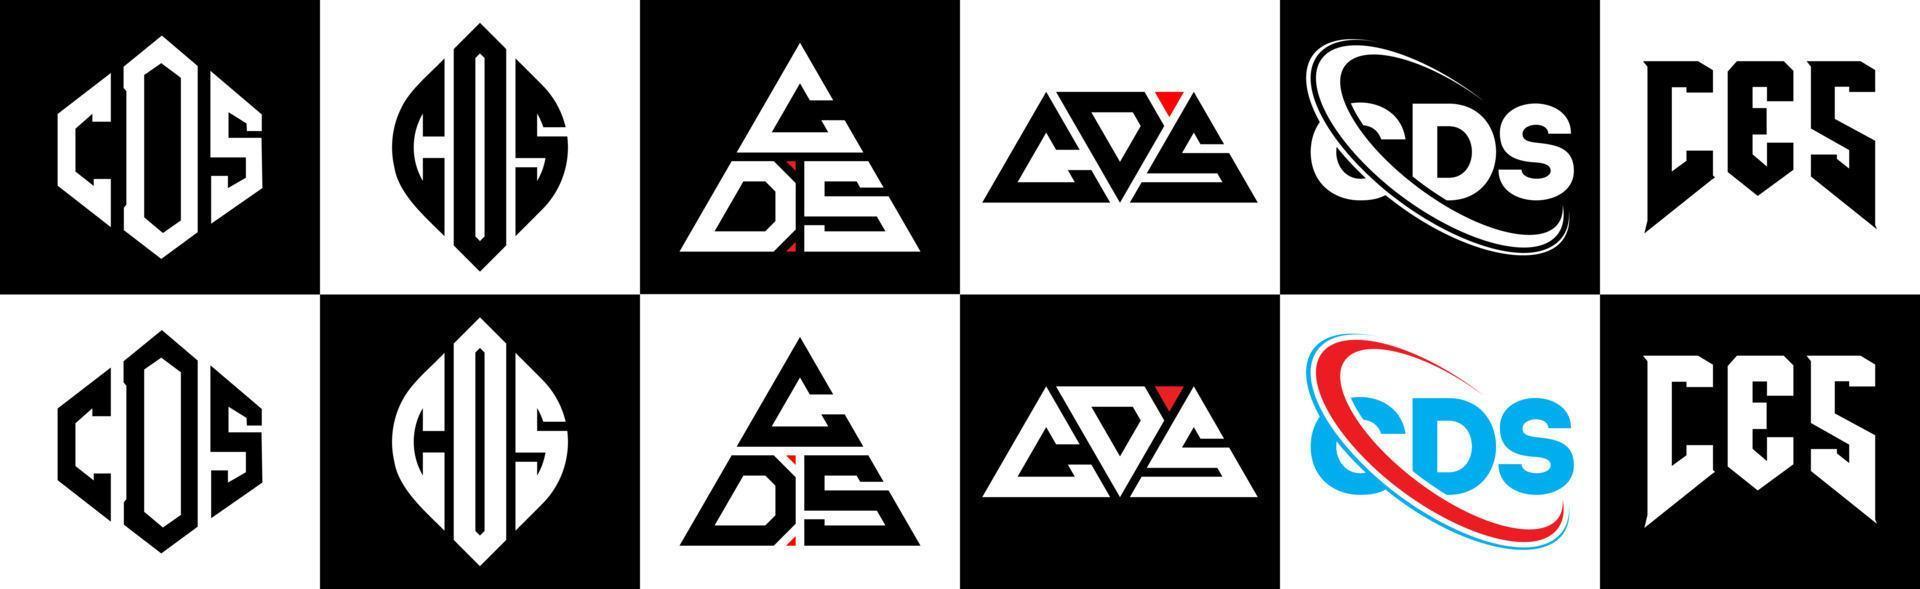 création de logo de lettre cd en six styles. cds polygone, cercle, triangle, hexagone, style plat et simple avec logo de lettre de variation de couleur noir et blanc dans un plan de travail. cds logo minimaliste et classique vecteur